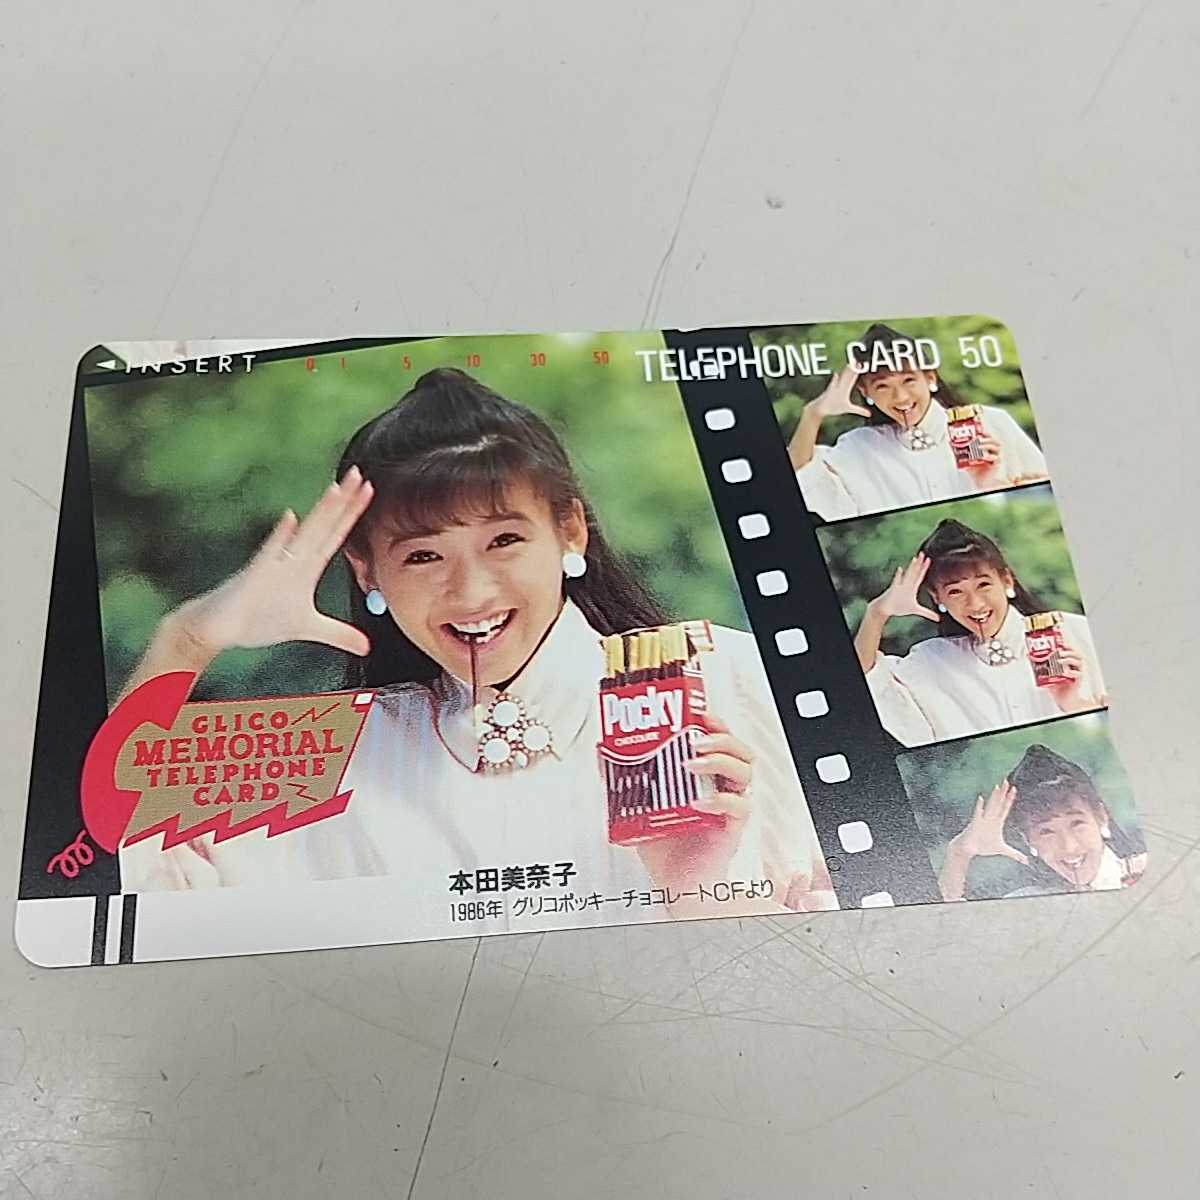 [Неиспользованная] Телефонная карта Minako Honda 50 градусов